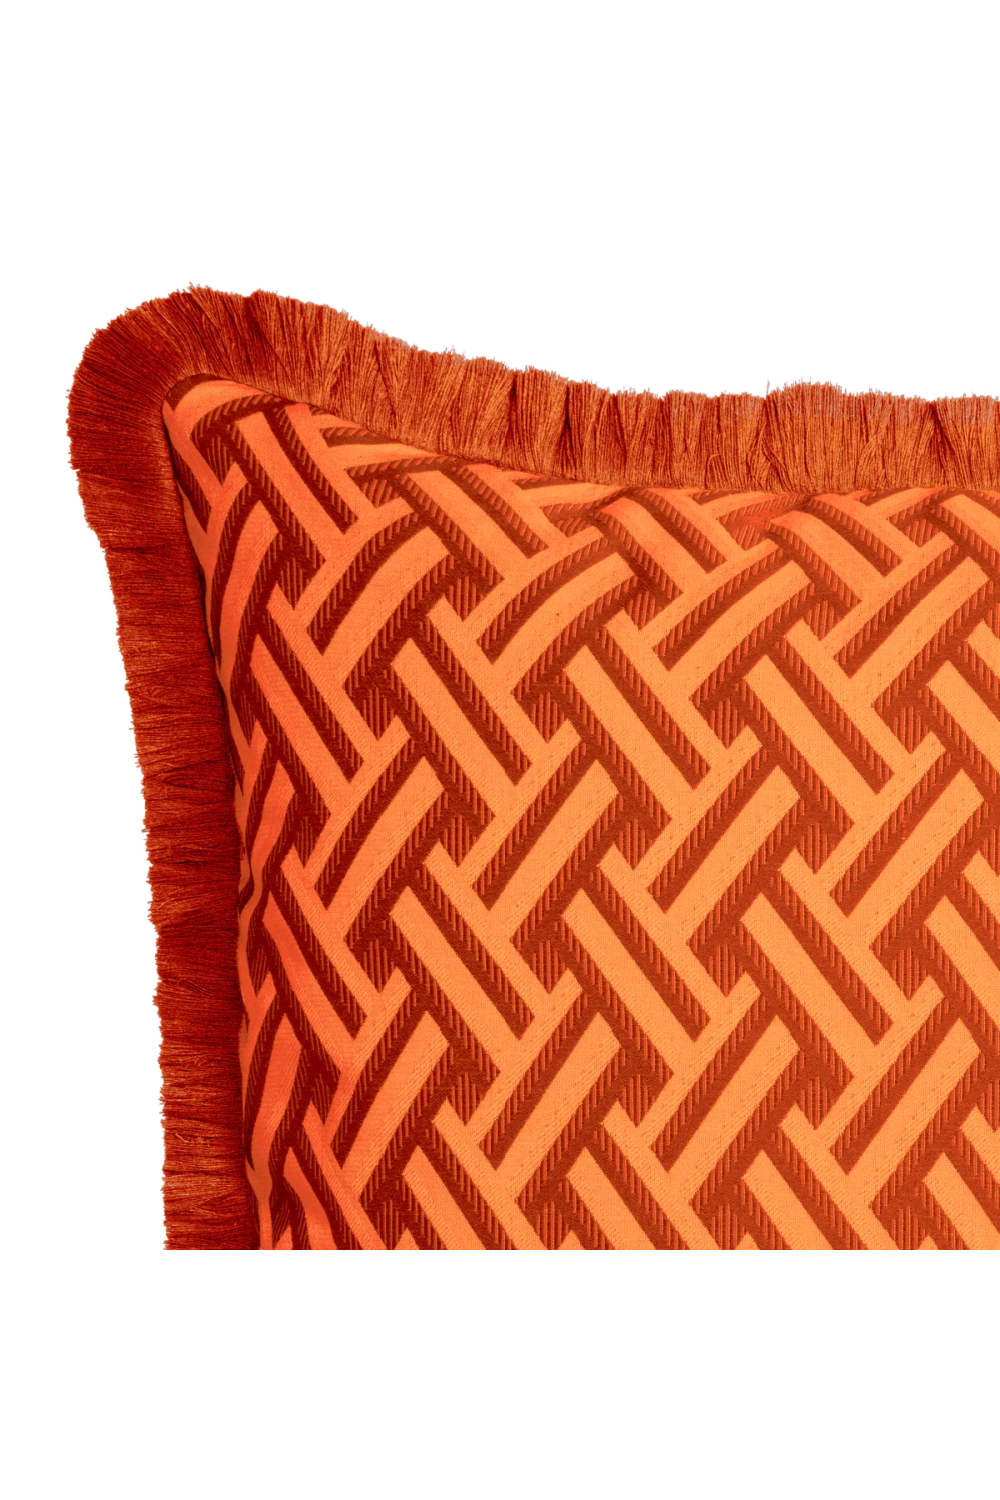 Orange Fringed Cushion | Eichholtz Doris | Oroa.com